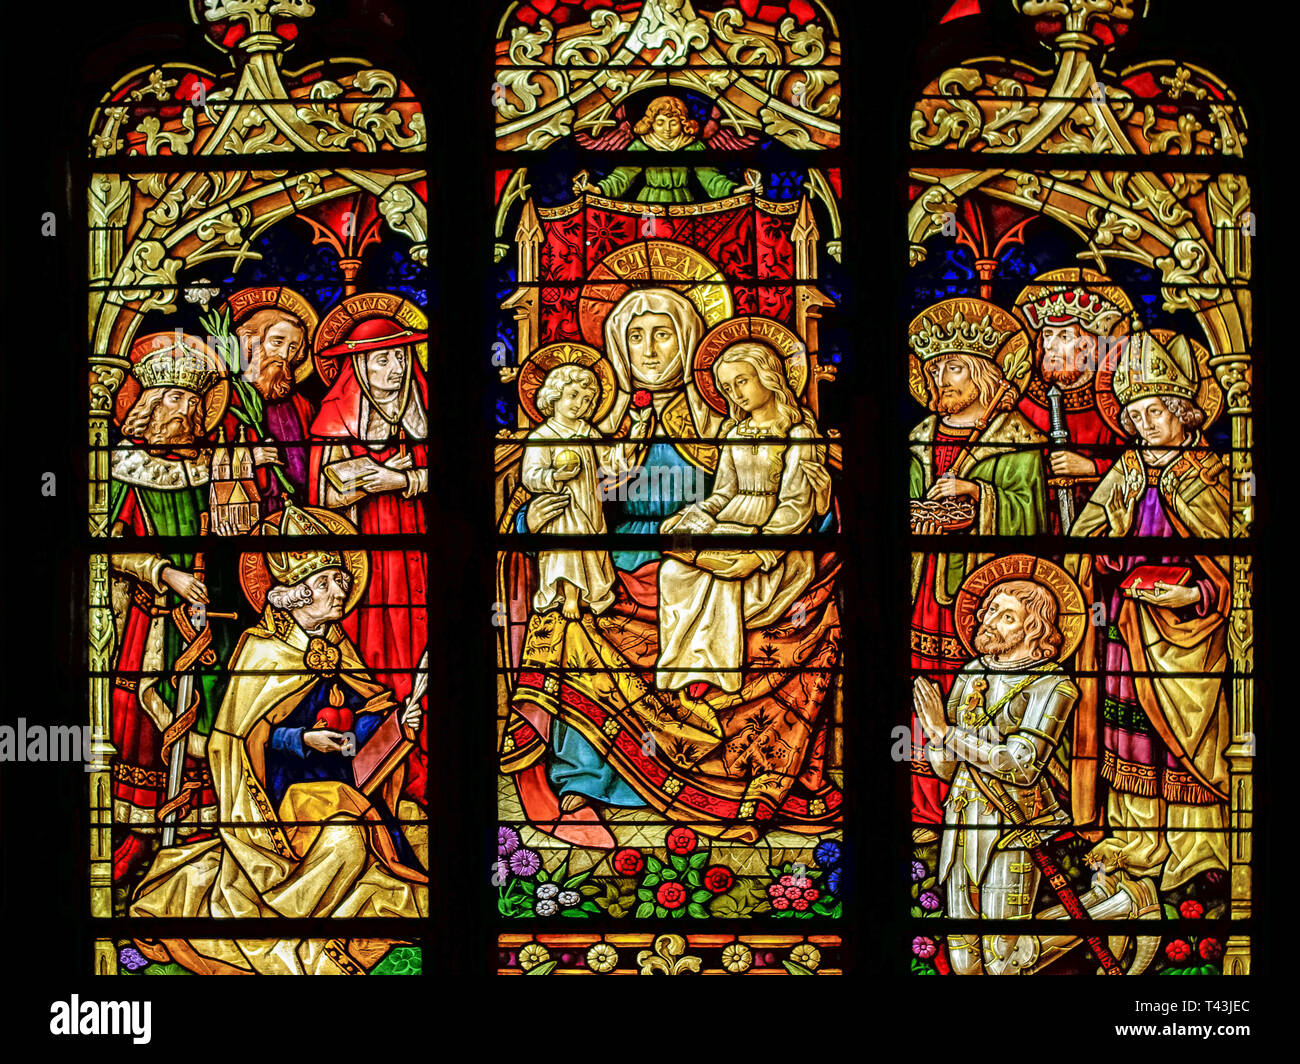 Konstanz am Bodensee, Deutschland, Europa: Jungfrau und Kind mit Saint Anne Szene in einem Glasfenster der Münster "Unserer Lieben Frau". Stockfoto